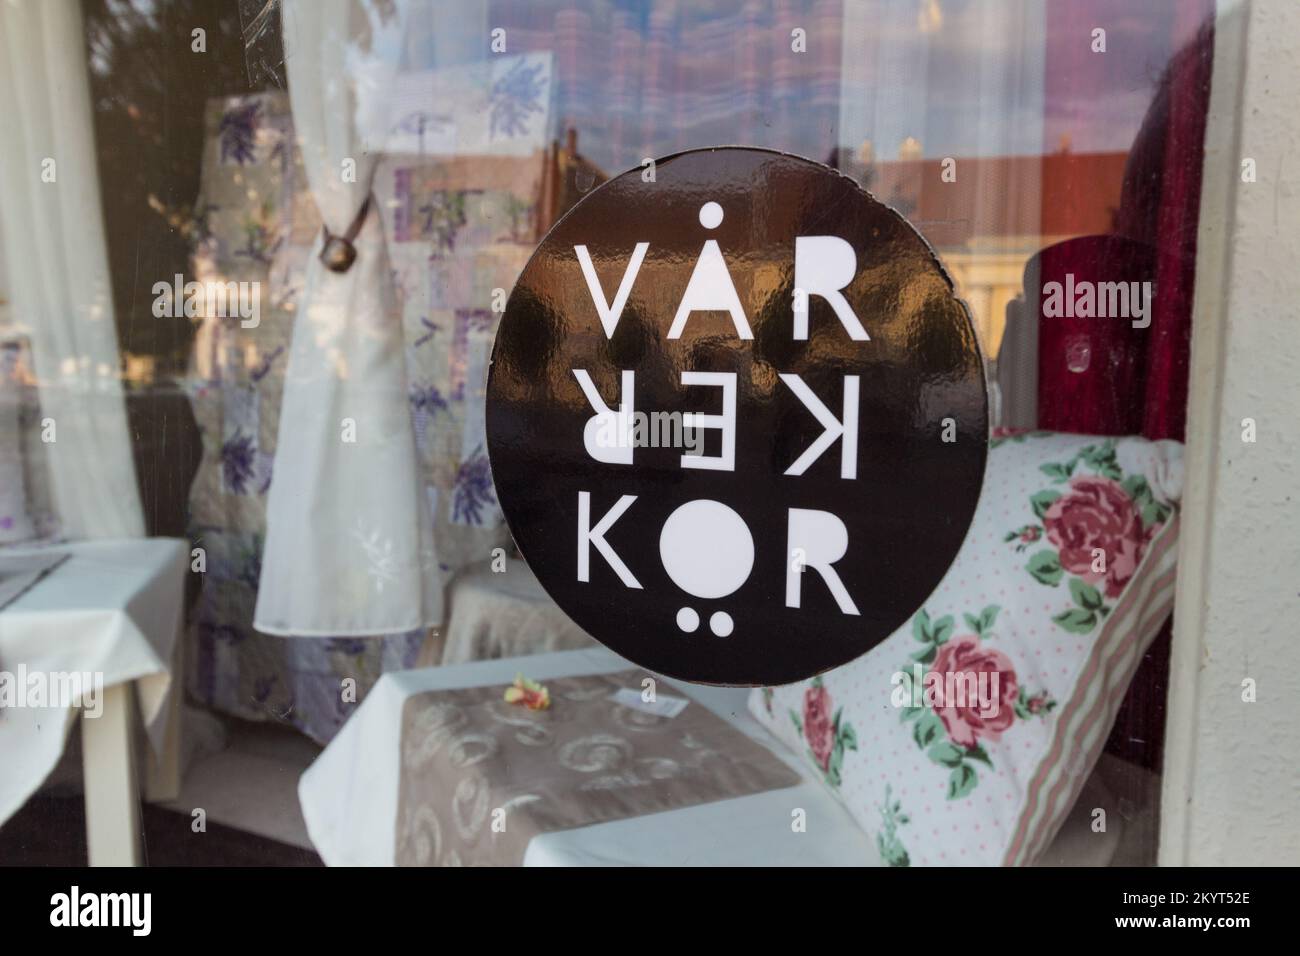 Logo of VarKerKor NGO on shop window, Varkerulet, Sopron, Hungary Stock Photo